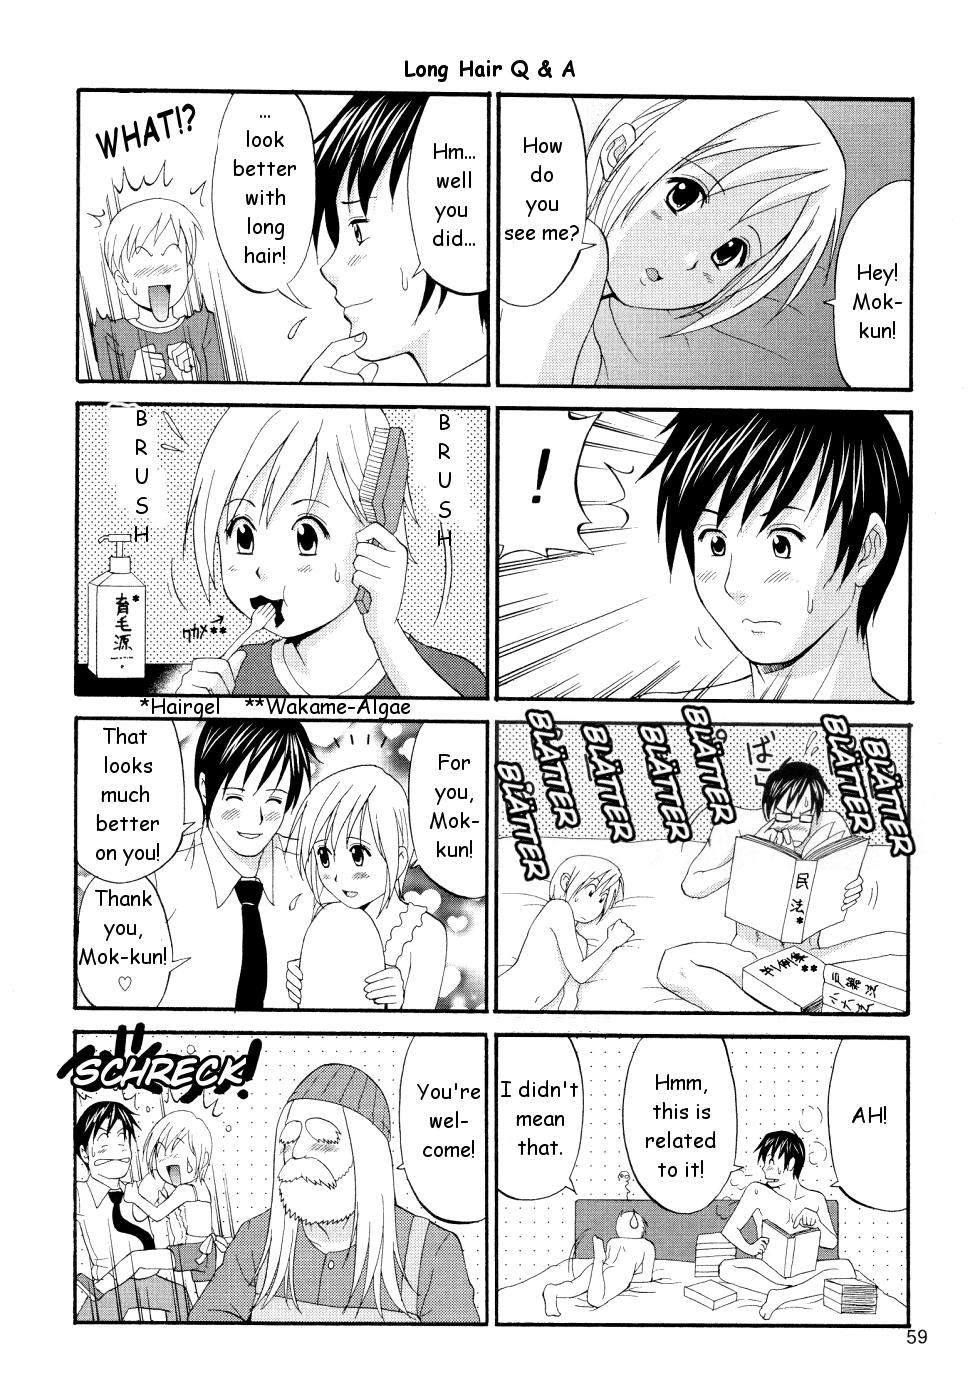 Babysitter Boku no Pico Comic + Koushiki Character Genanshuu - Boku no pico Weird - Page 59